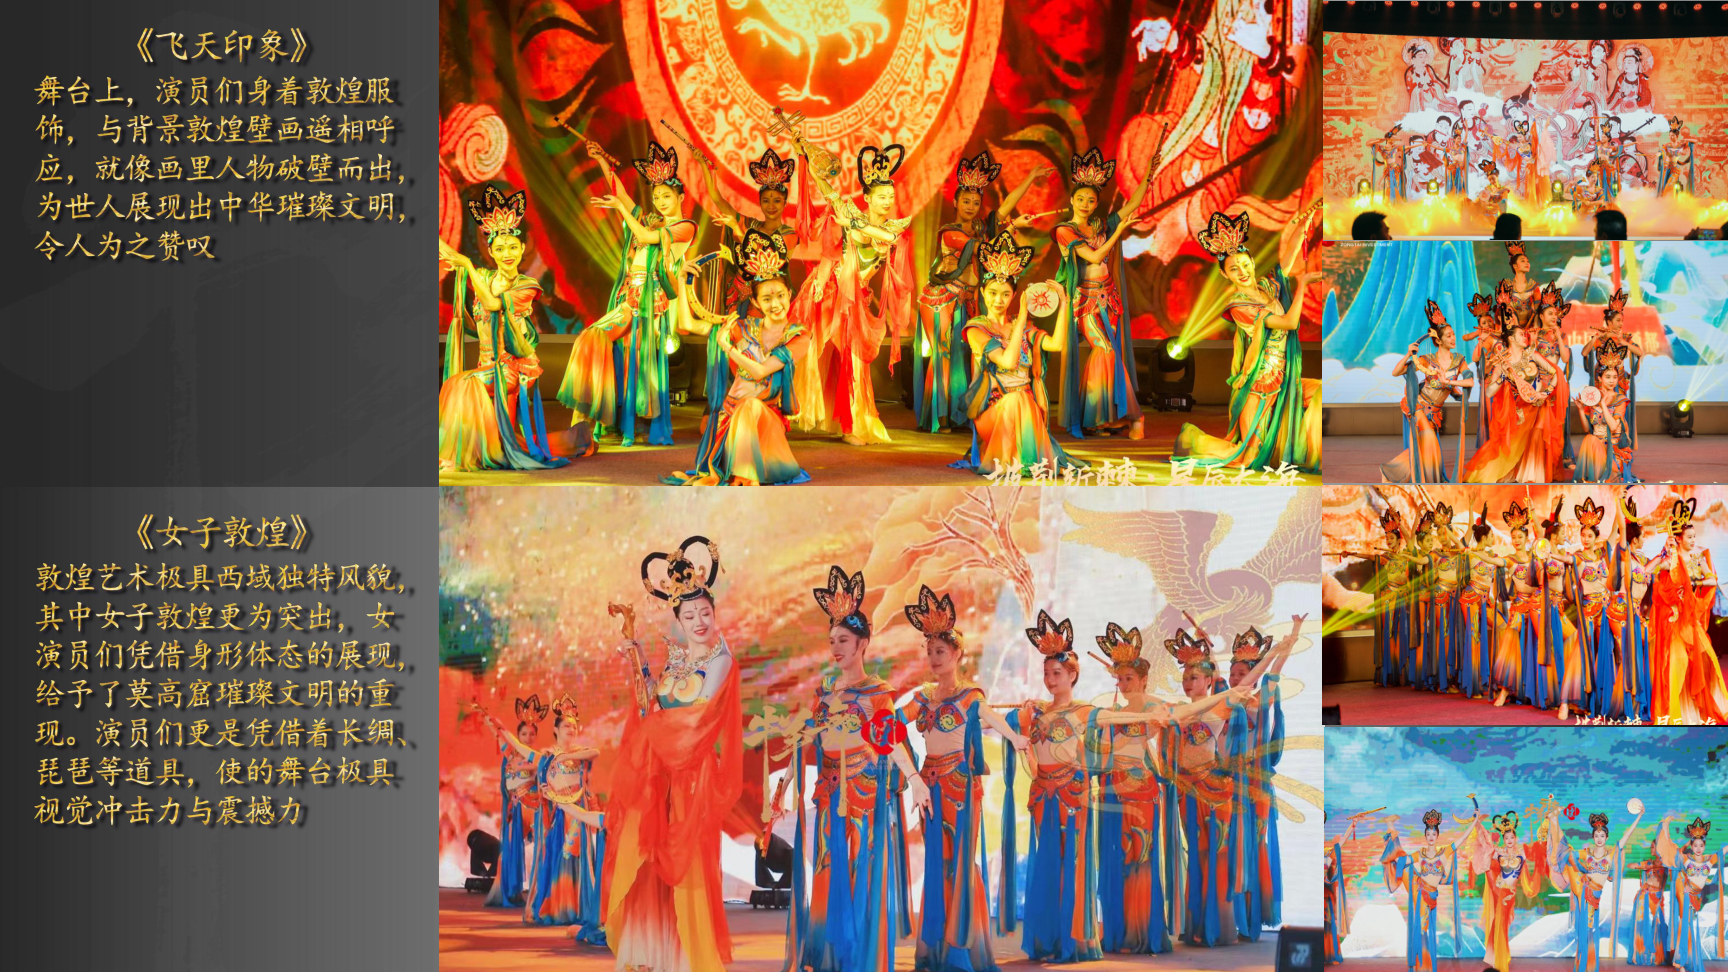 《傣族舞》民族舞蹈节目